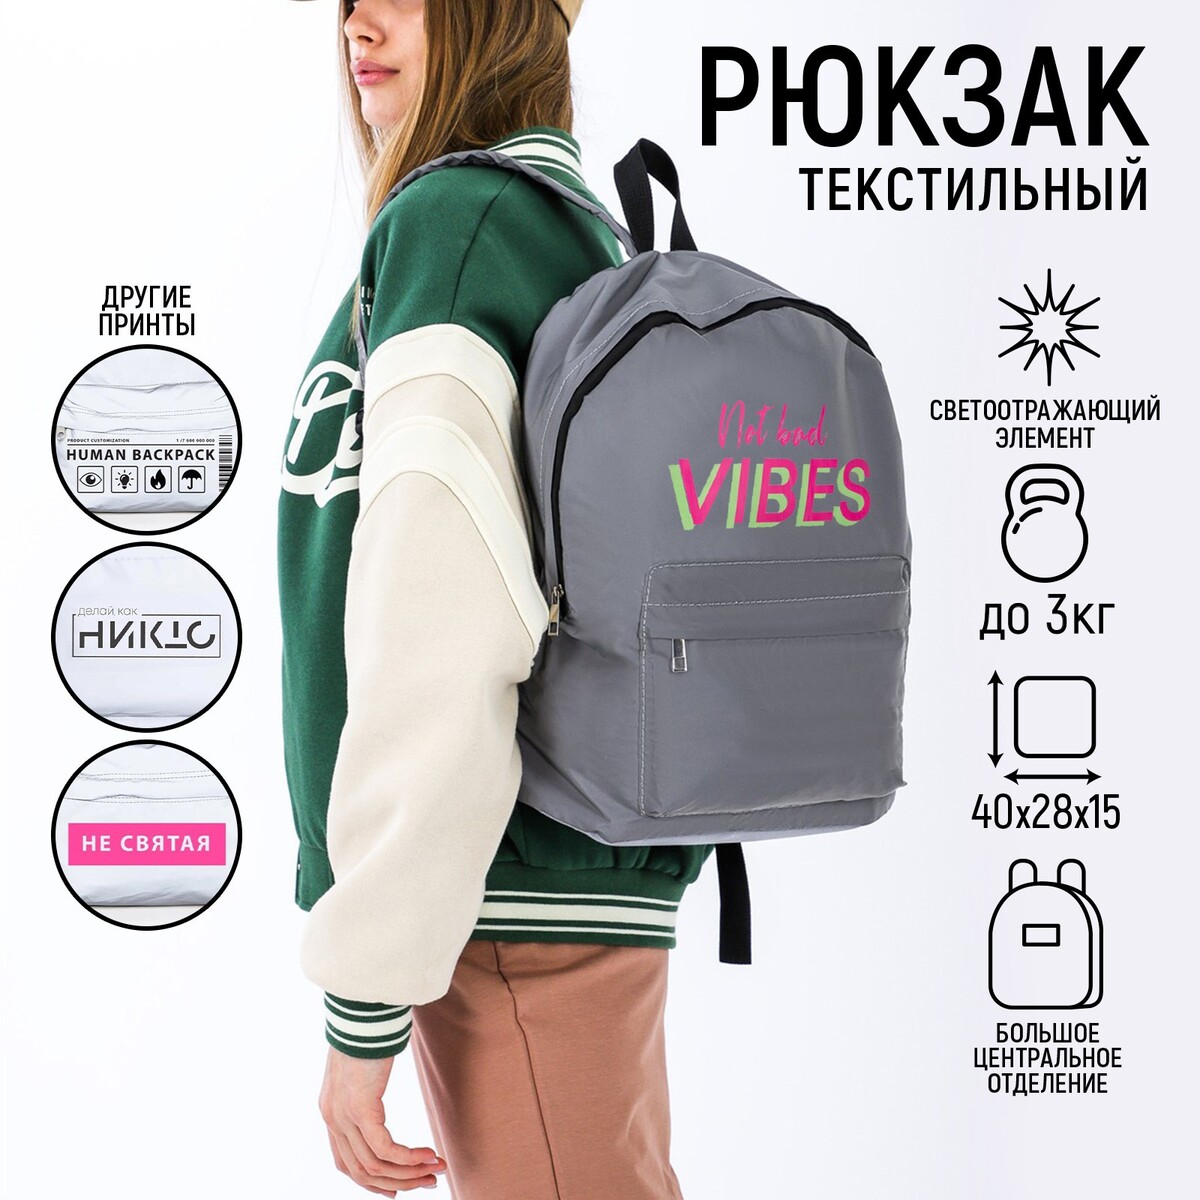 Рюкзак текстильный светоотражающий, not bad vibes, 42 х 30 х 12см рюкзак аниме с тачкой 40 27 12см 1отд